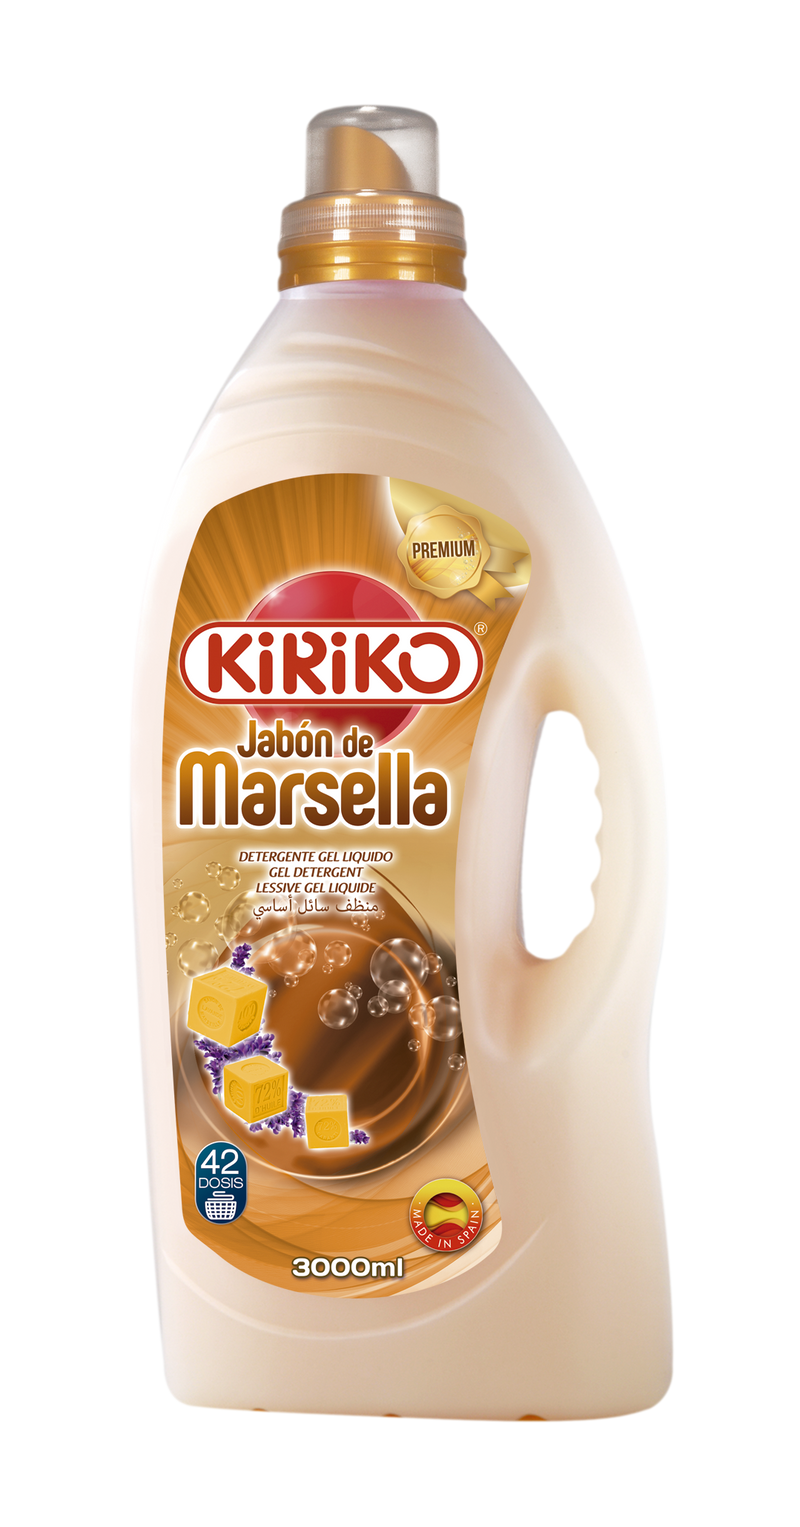 Kiriko Marsella Detergent 3L